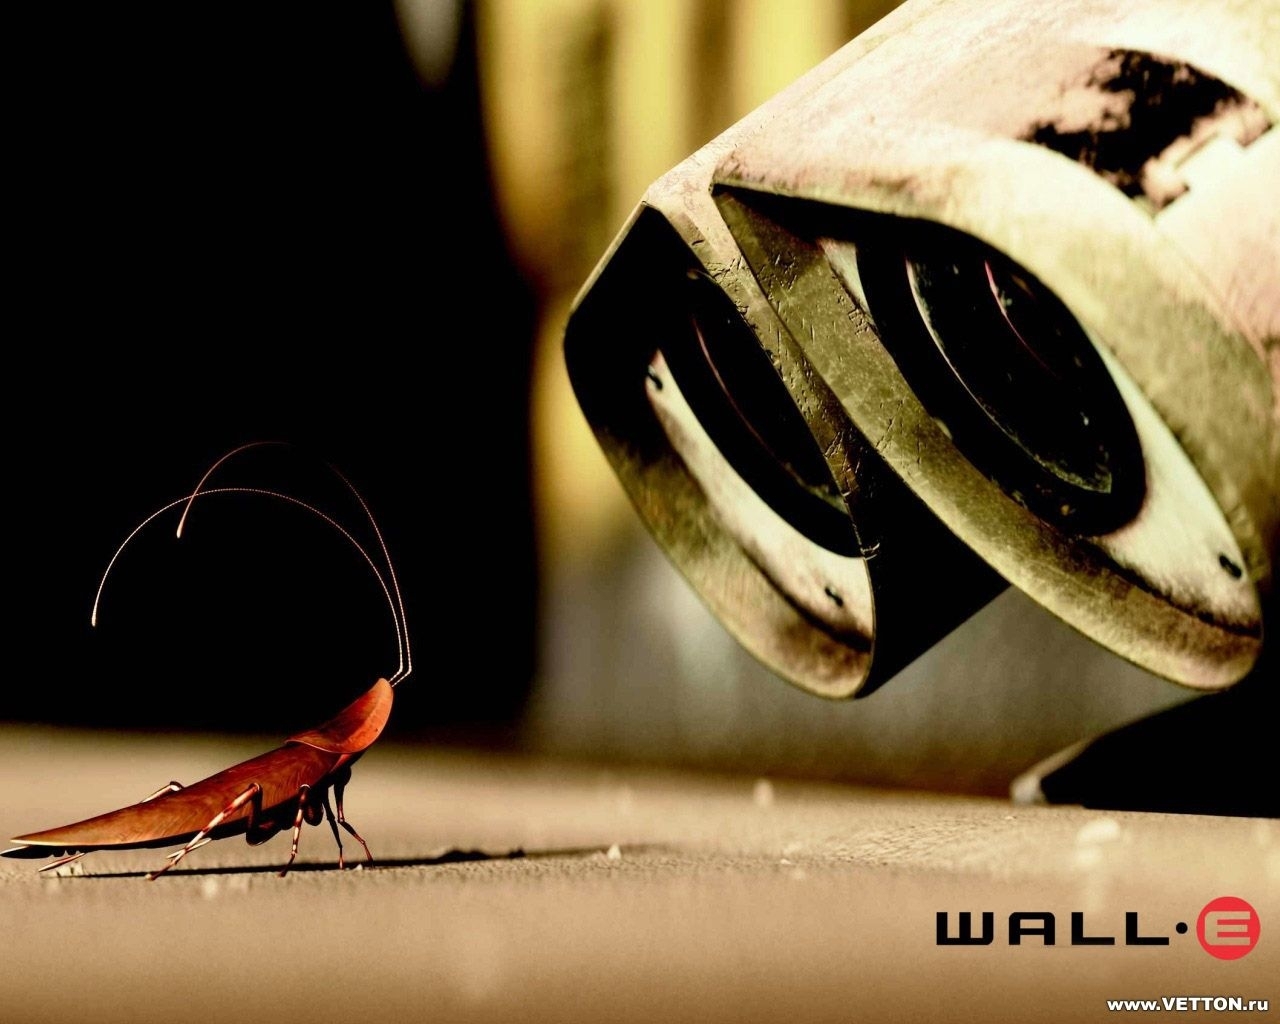 Descarga gratuita de fondo de pantalla para móvil de Insectos, Robots, Wall E, Dibujos Animados.